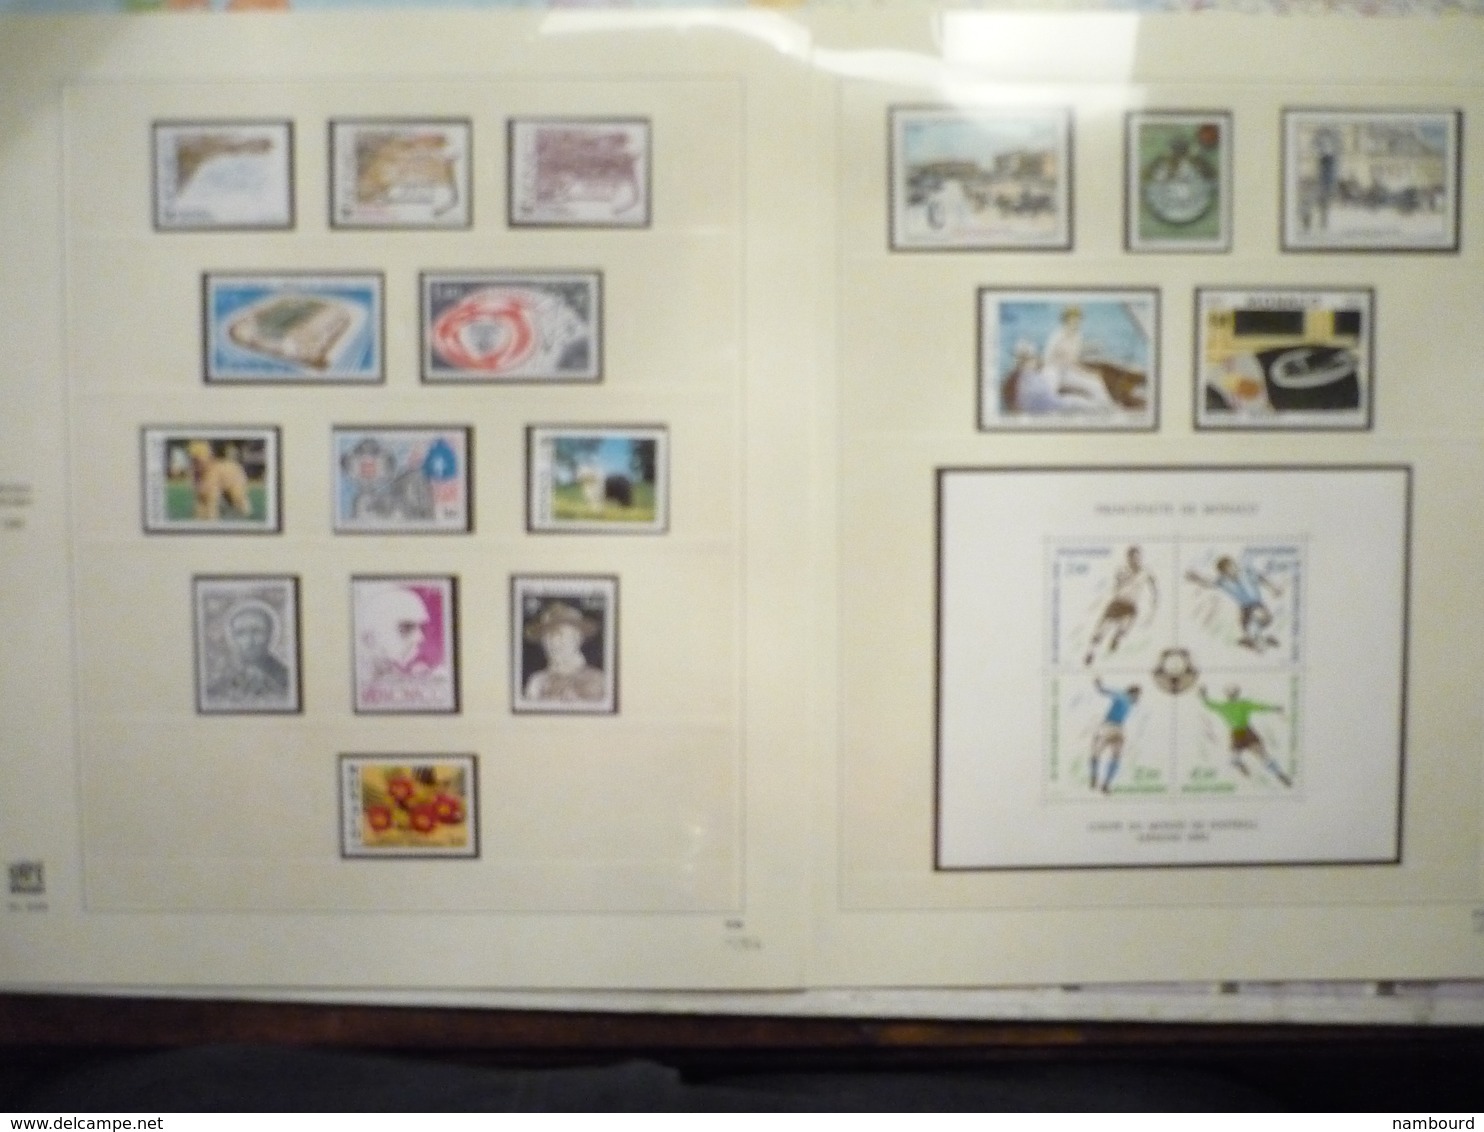 Collection de timbres de Monaco neufs sans charnières dans Album SAFE de 1979 à 1986